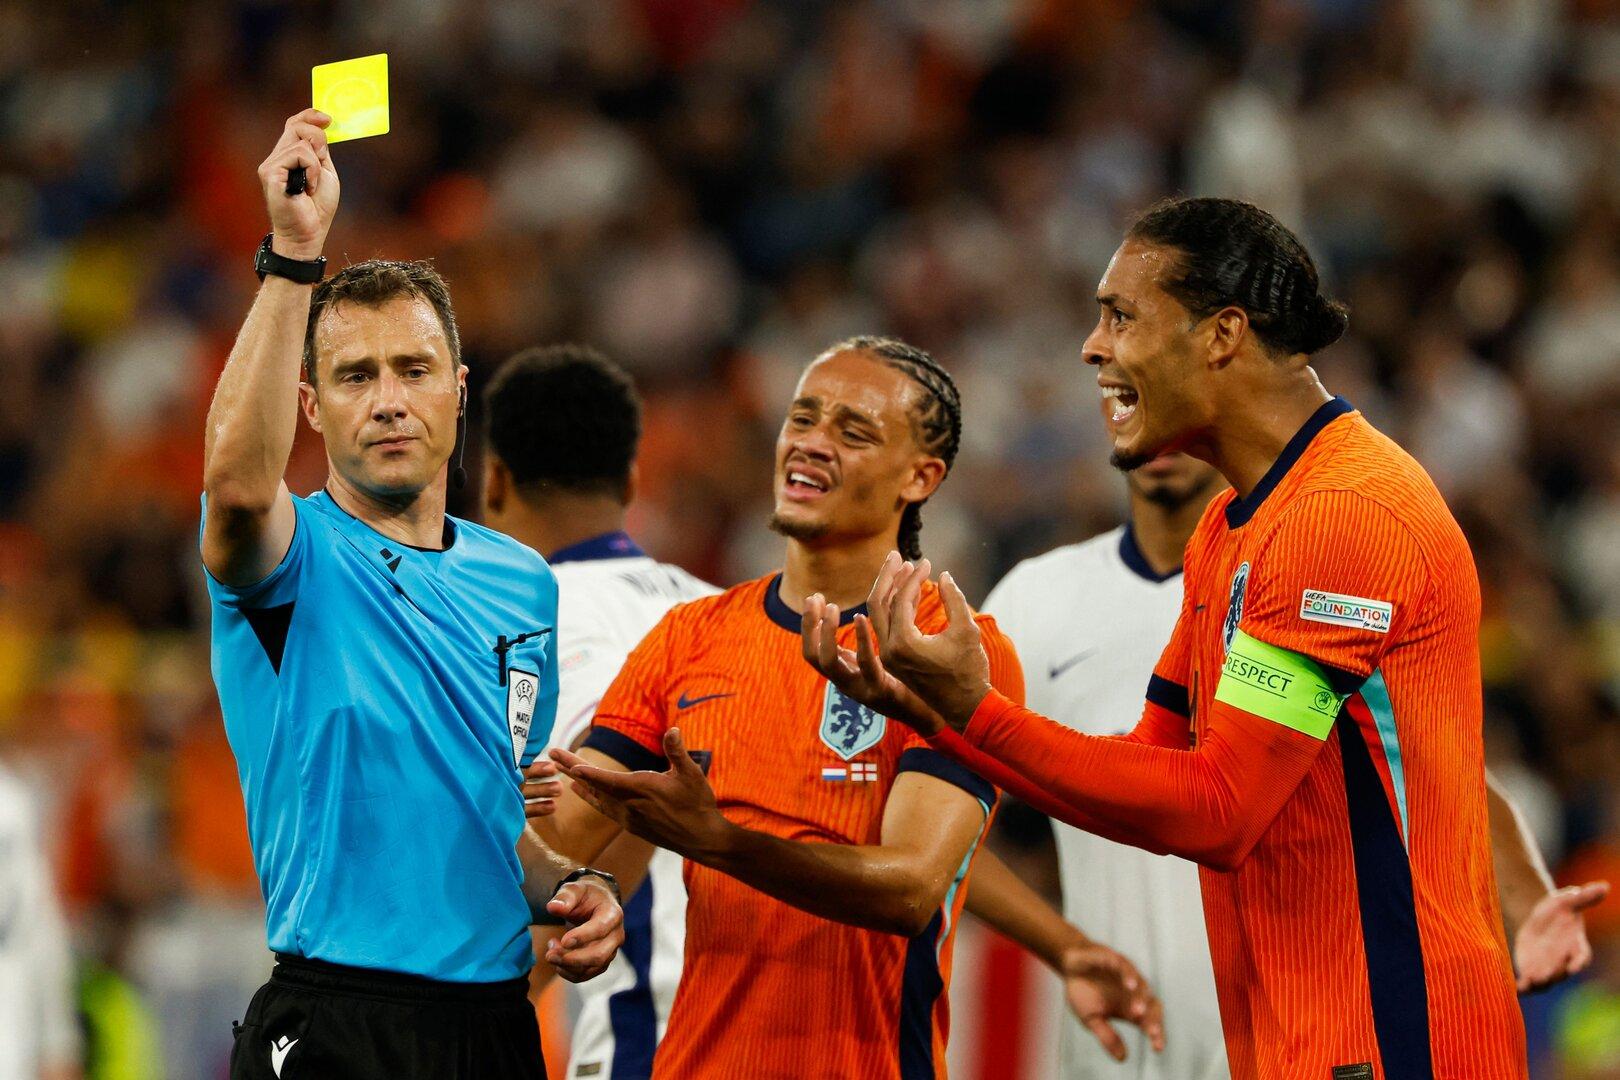 Auch in Österreich dürfen nur noch Kapitäne mit dem Referee sprechen